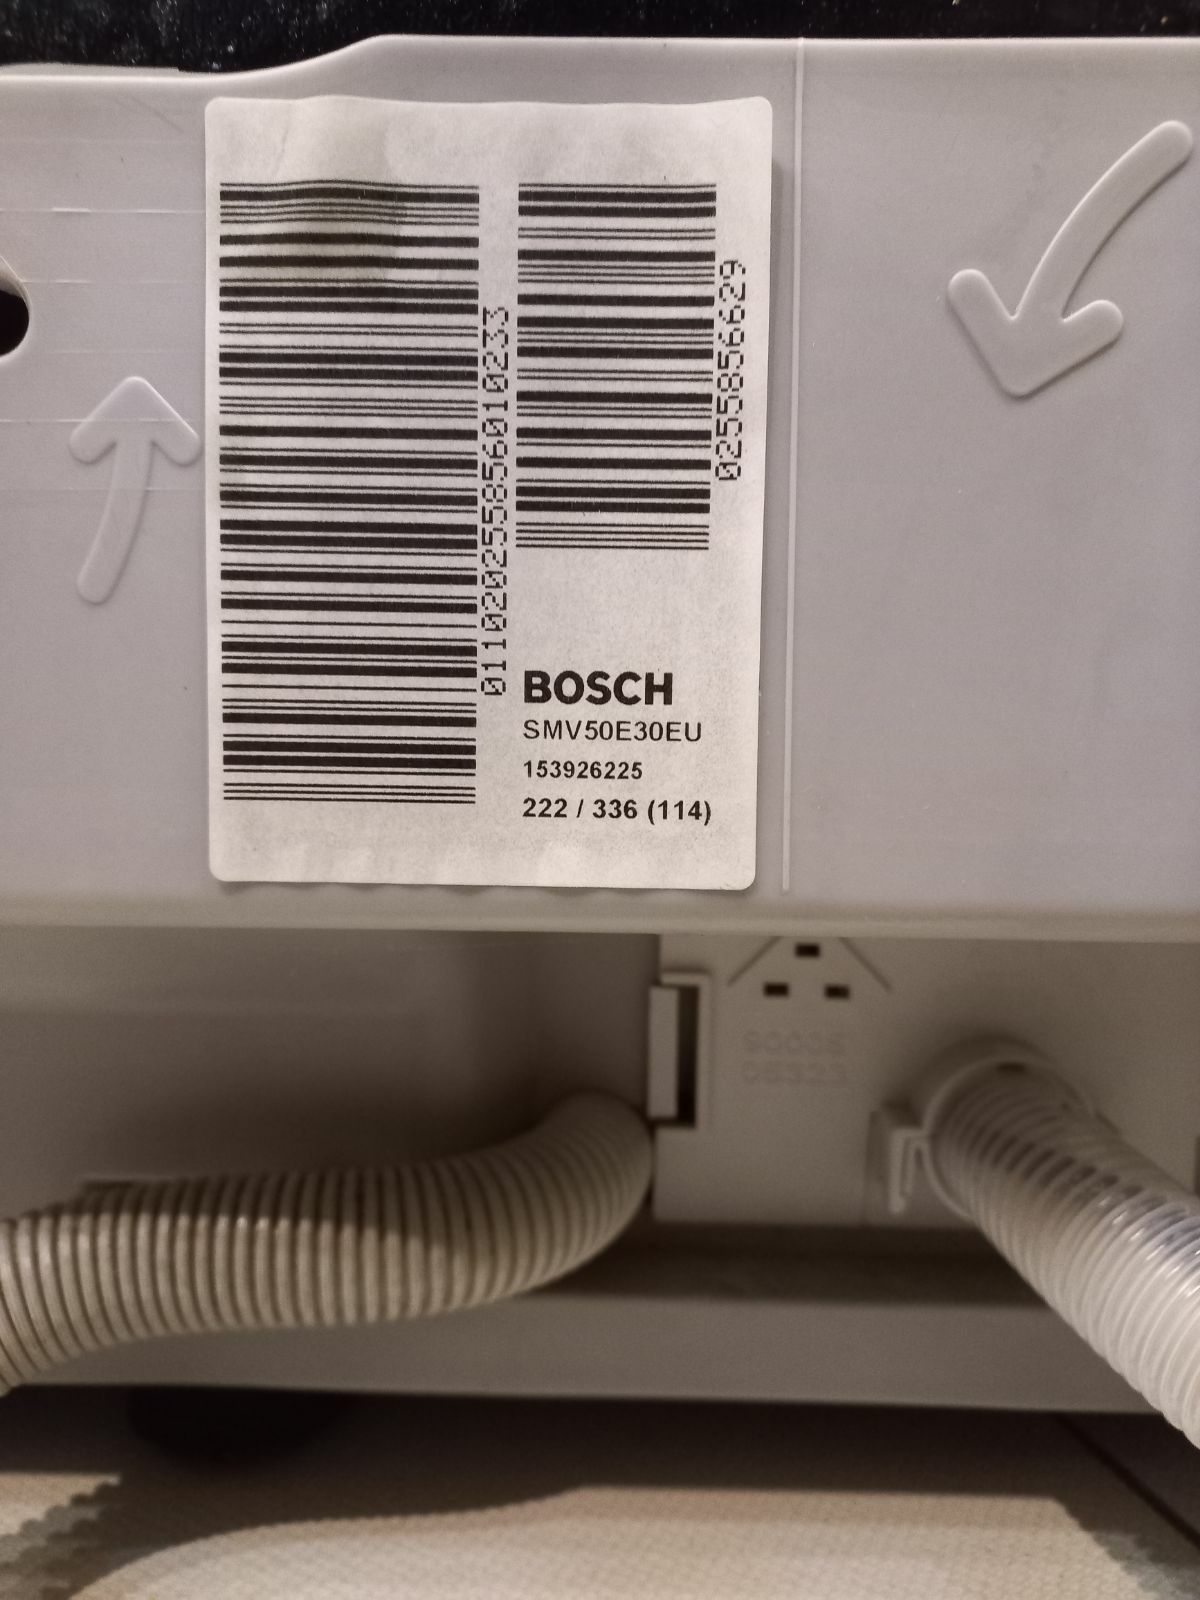 Moduł sterujący do zmywarki Bosch